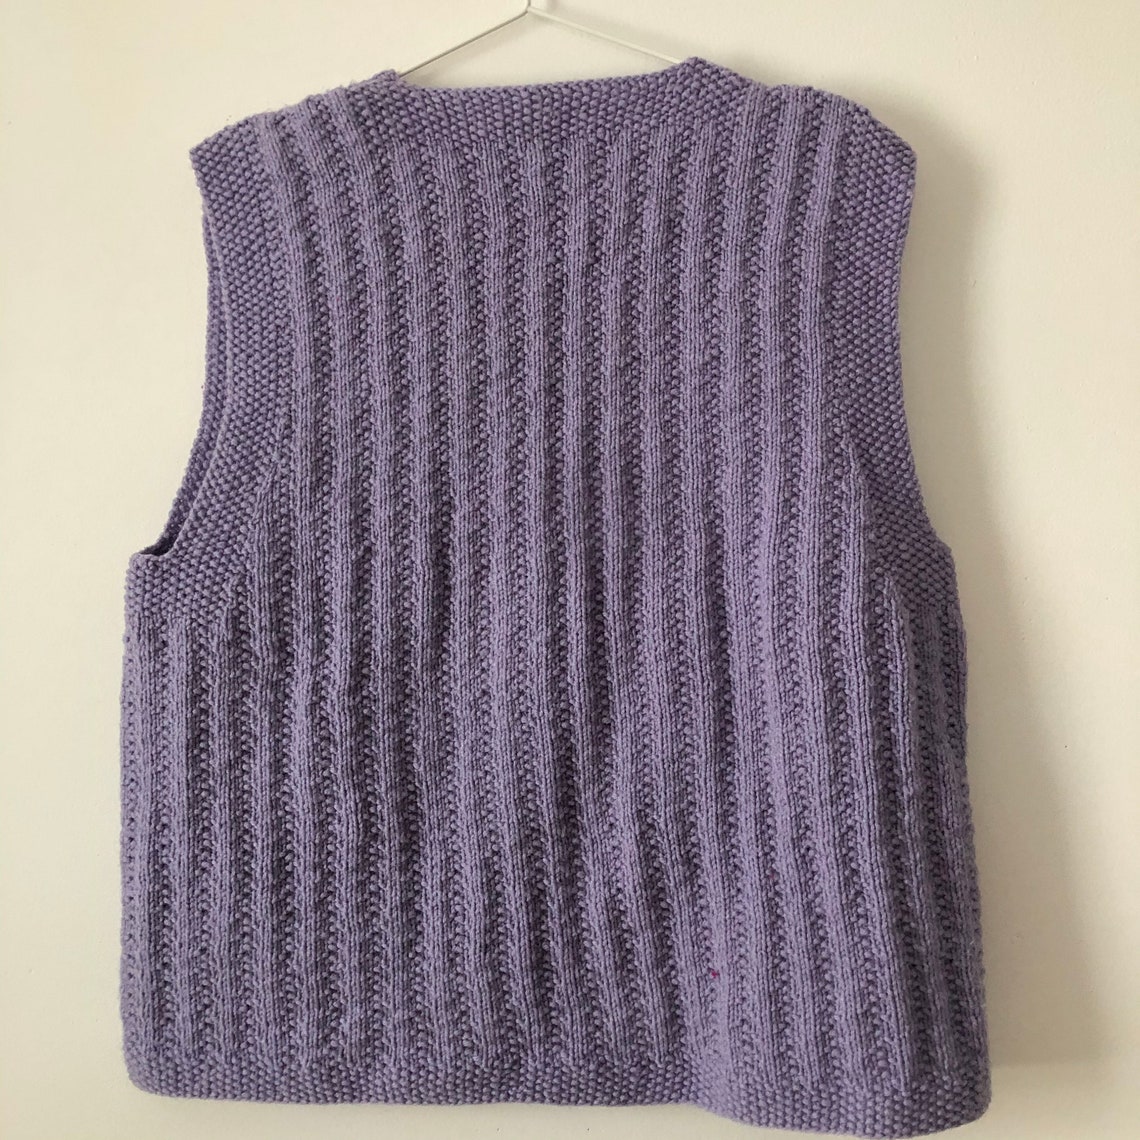 Lavender handmade sweater vest button front v neck large | Etsy